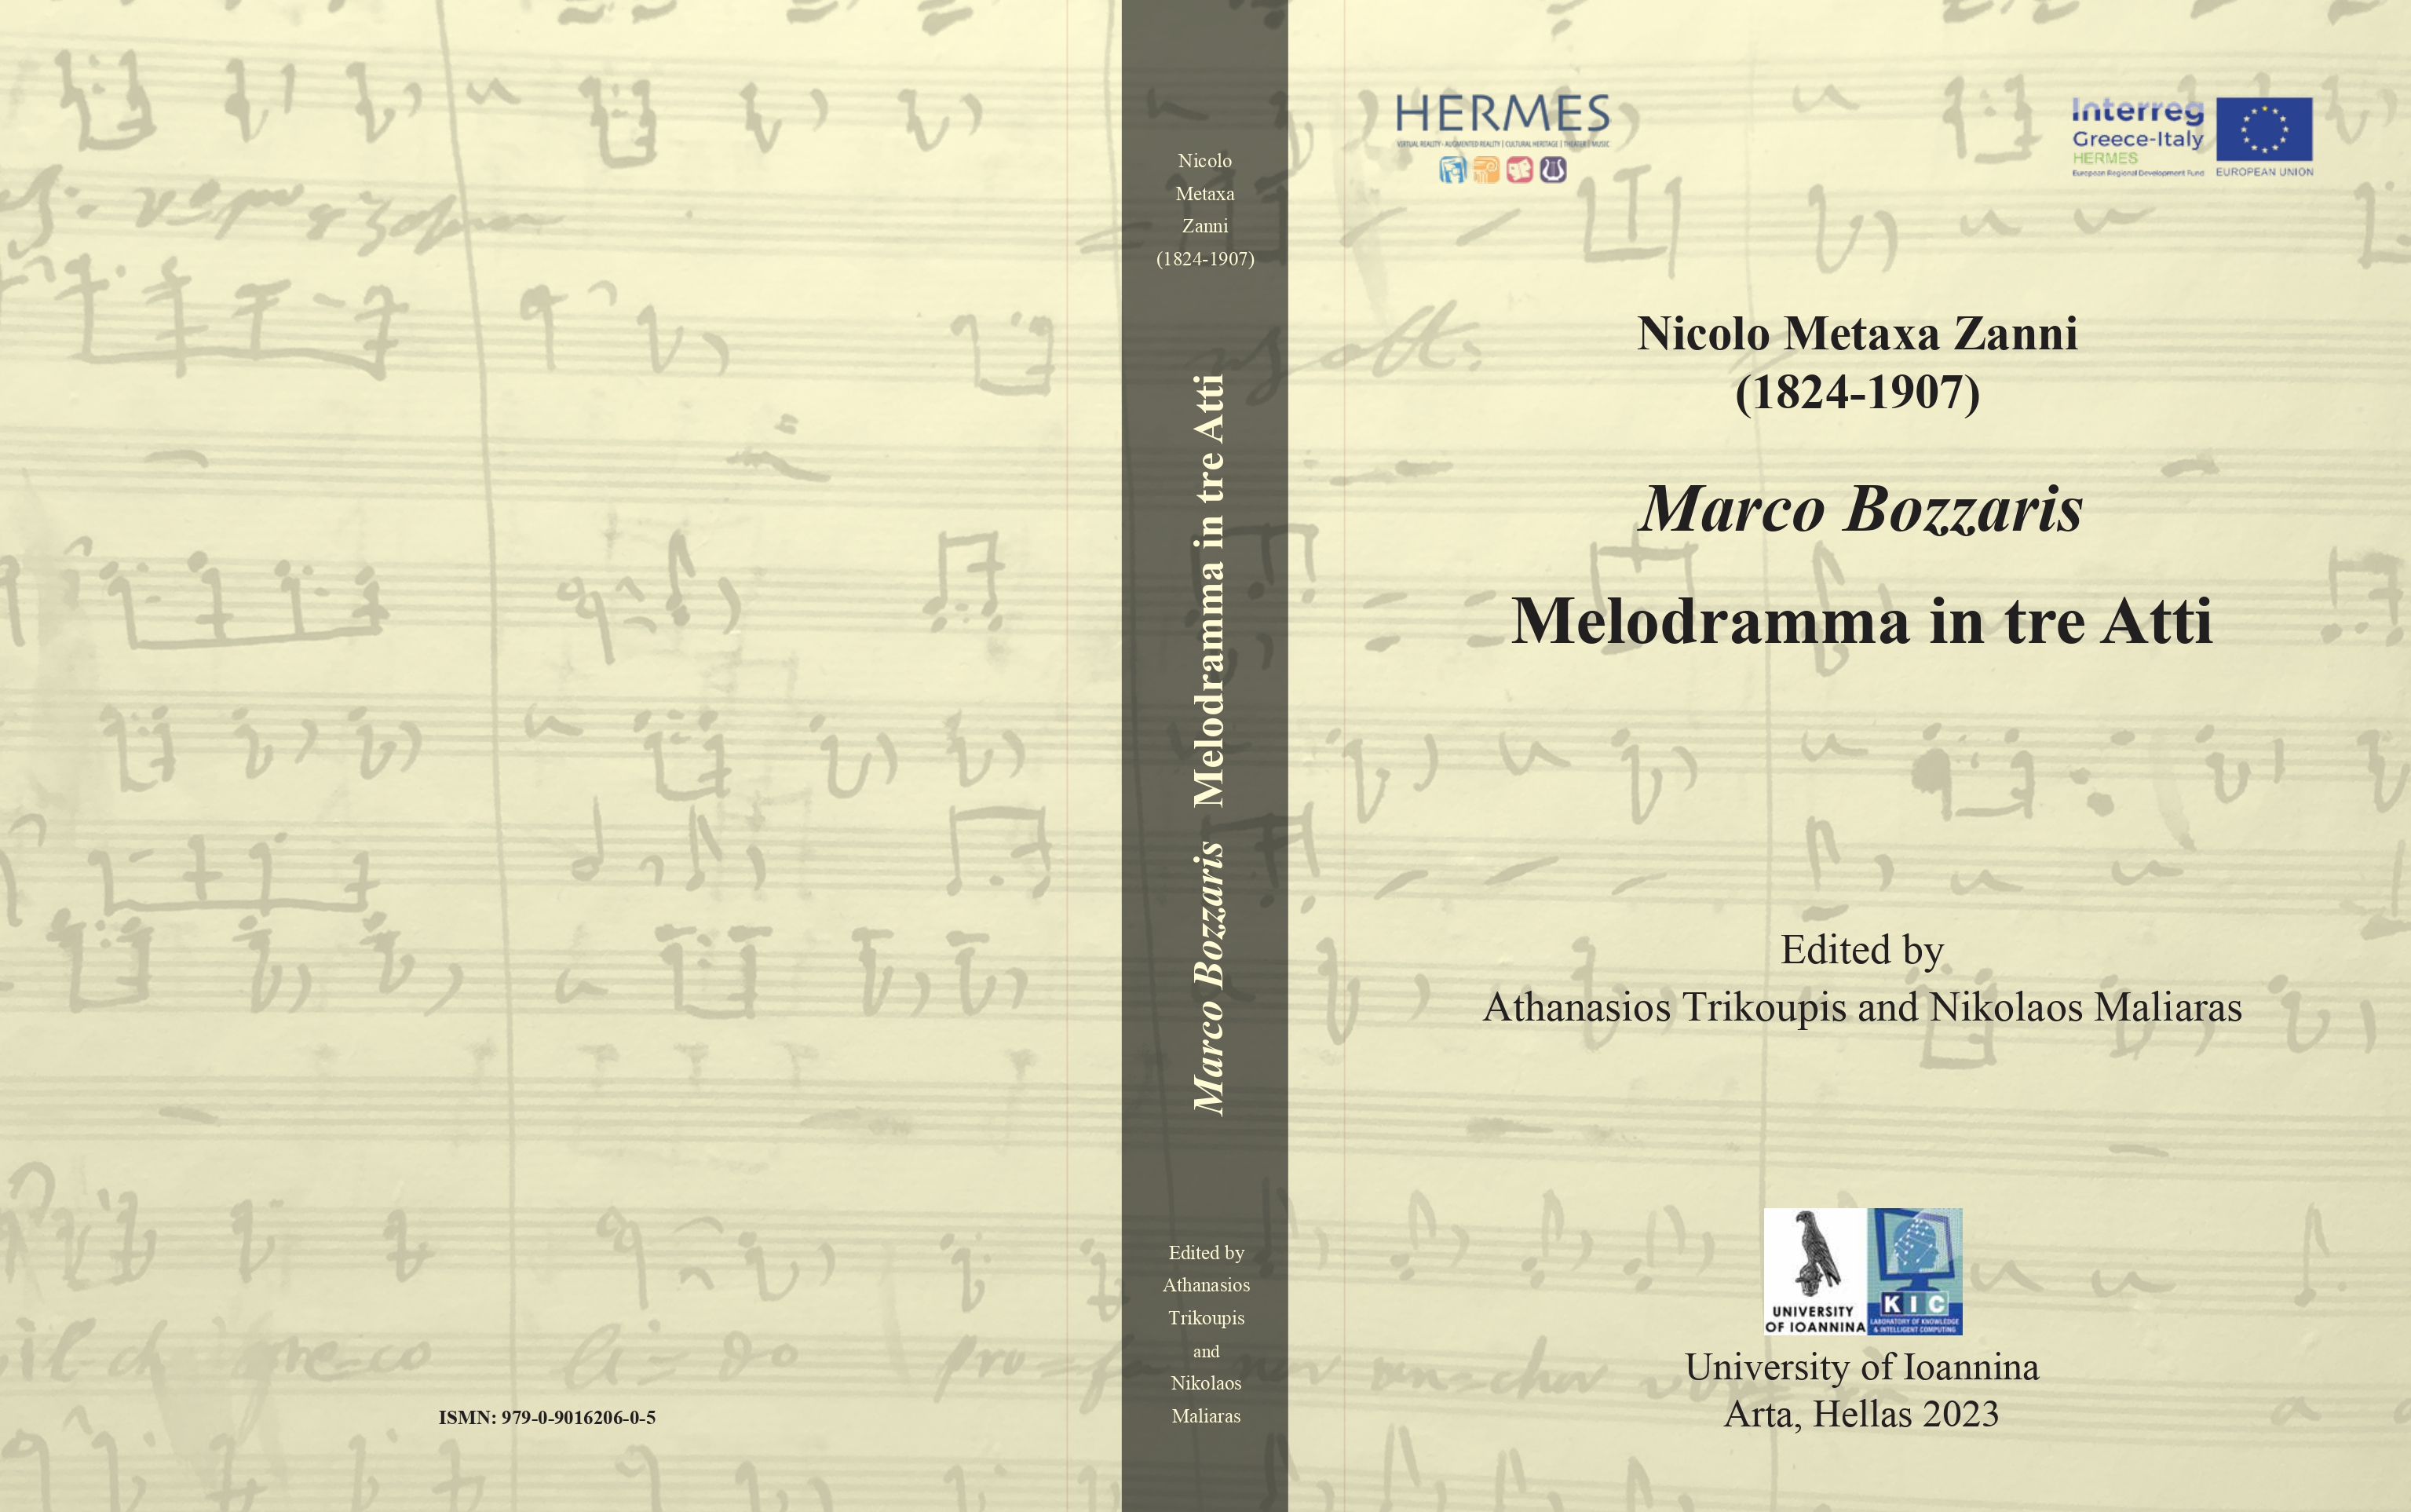 Νικόλαος Μεταξάς Τζανής (1824-1907): Μελόδραμα Μάρκος Μπότσαρης (1854)